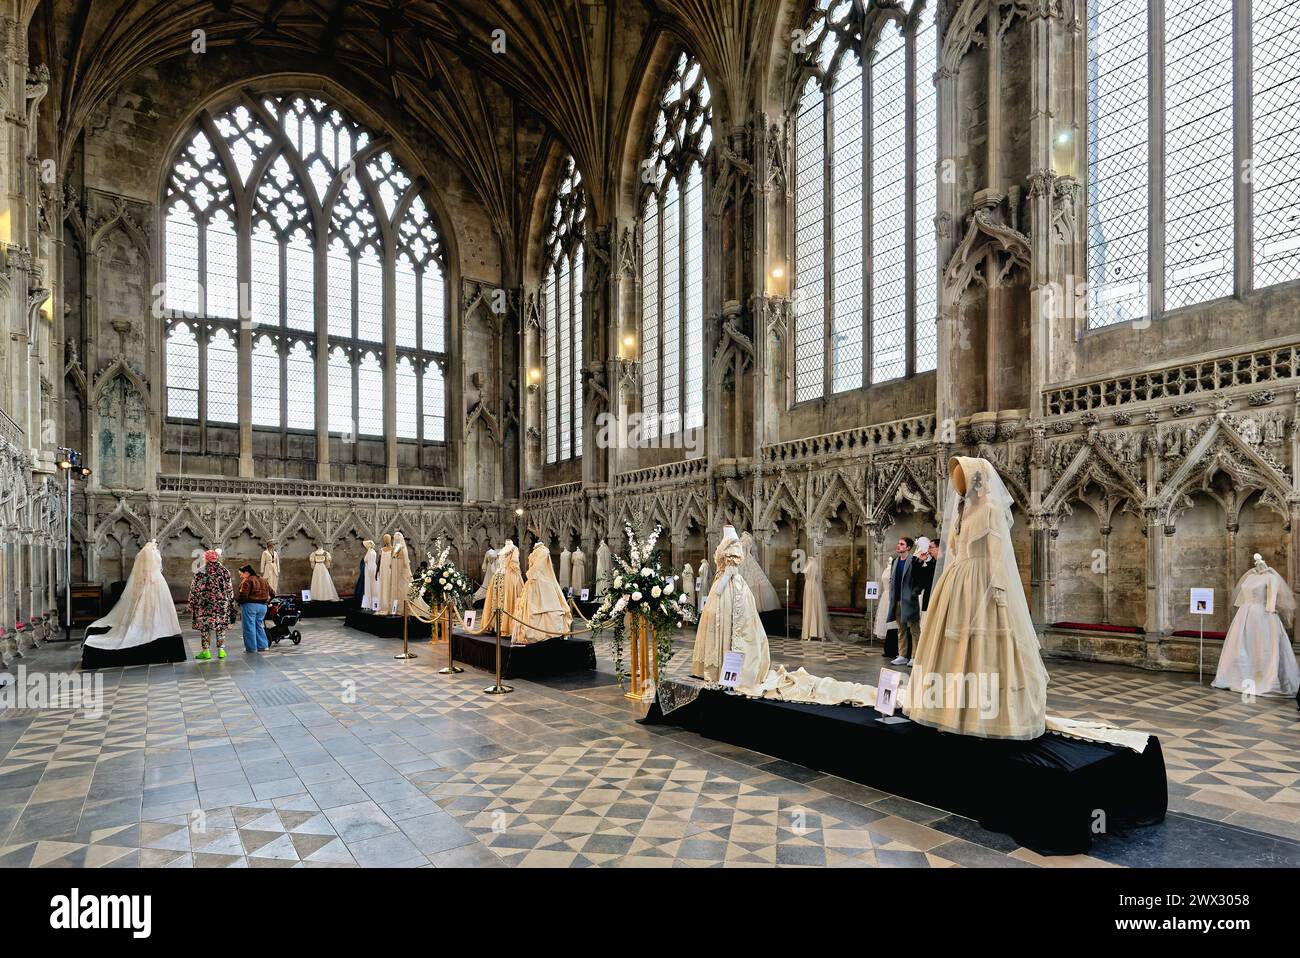 Eine Feier der Brautkleider in der Lady Chapel of Ely Cathedral Cambridgeshire England Großbritannien Stockfoto